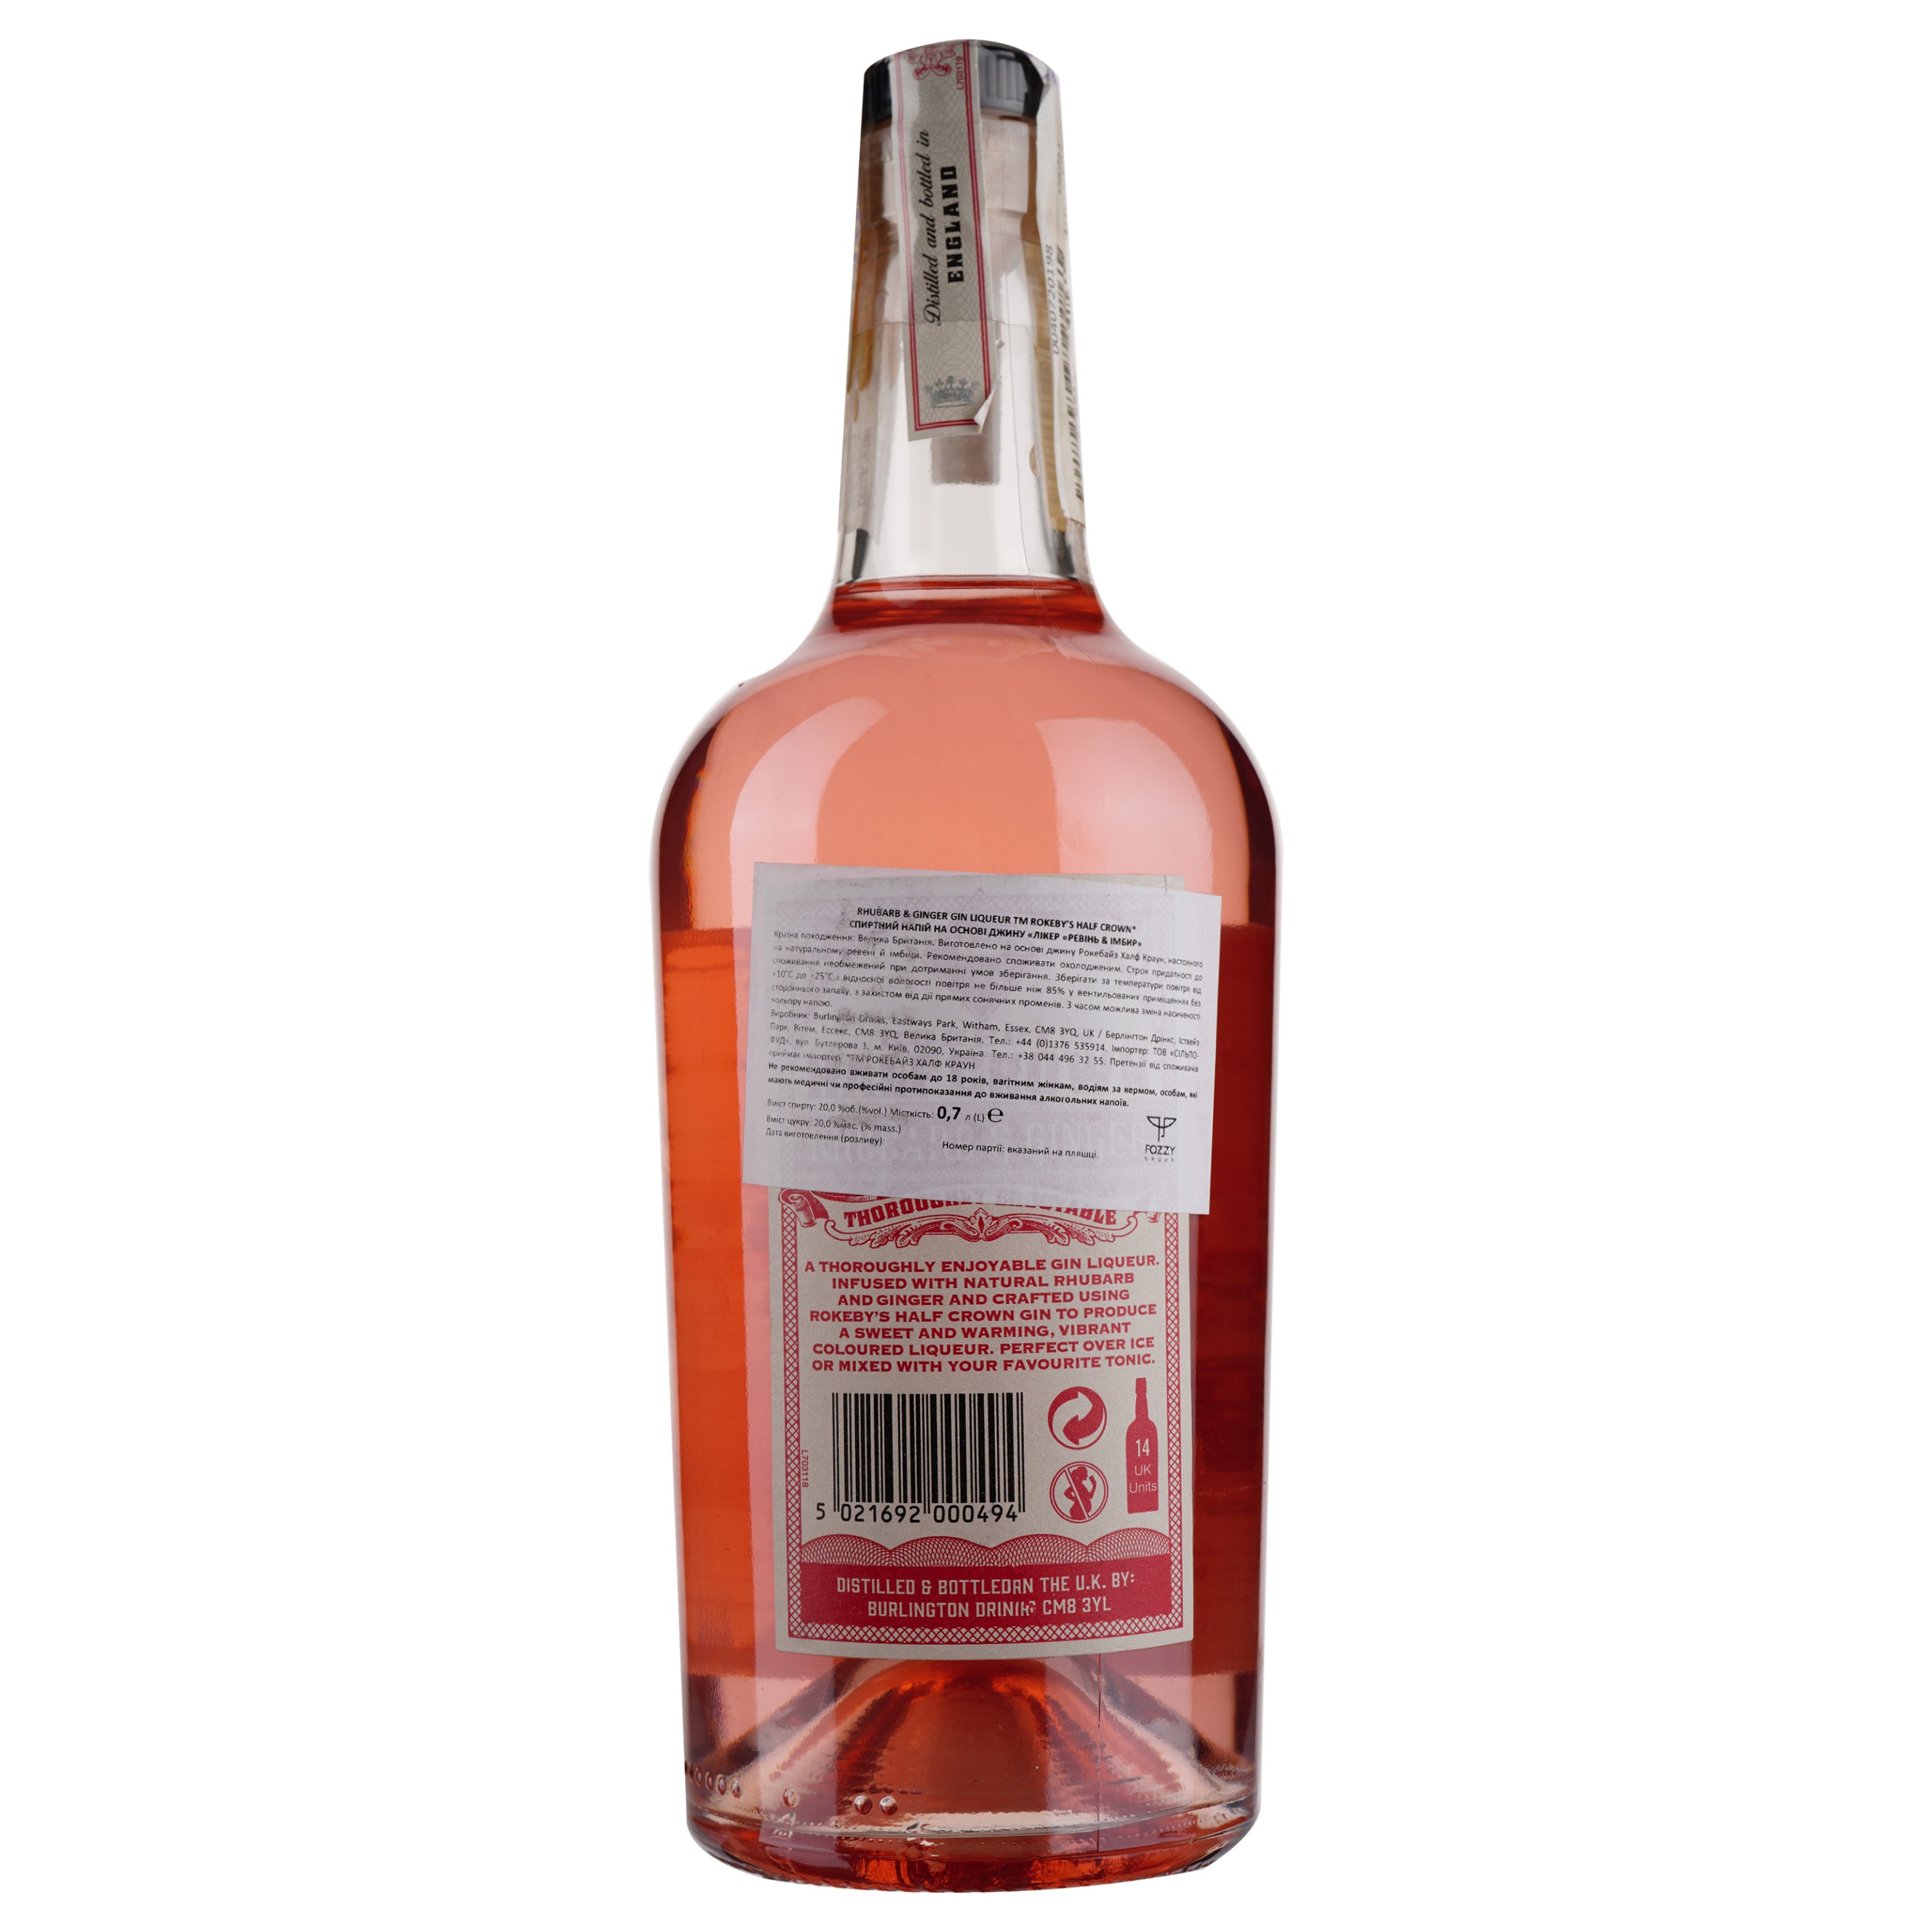 Напиток на основе джина Rokeby's Half Crown Rhubarb&Ginger, 20%, 0,7 л (872471) - фото 2